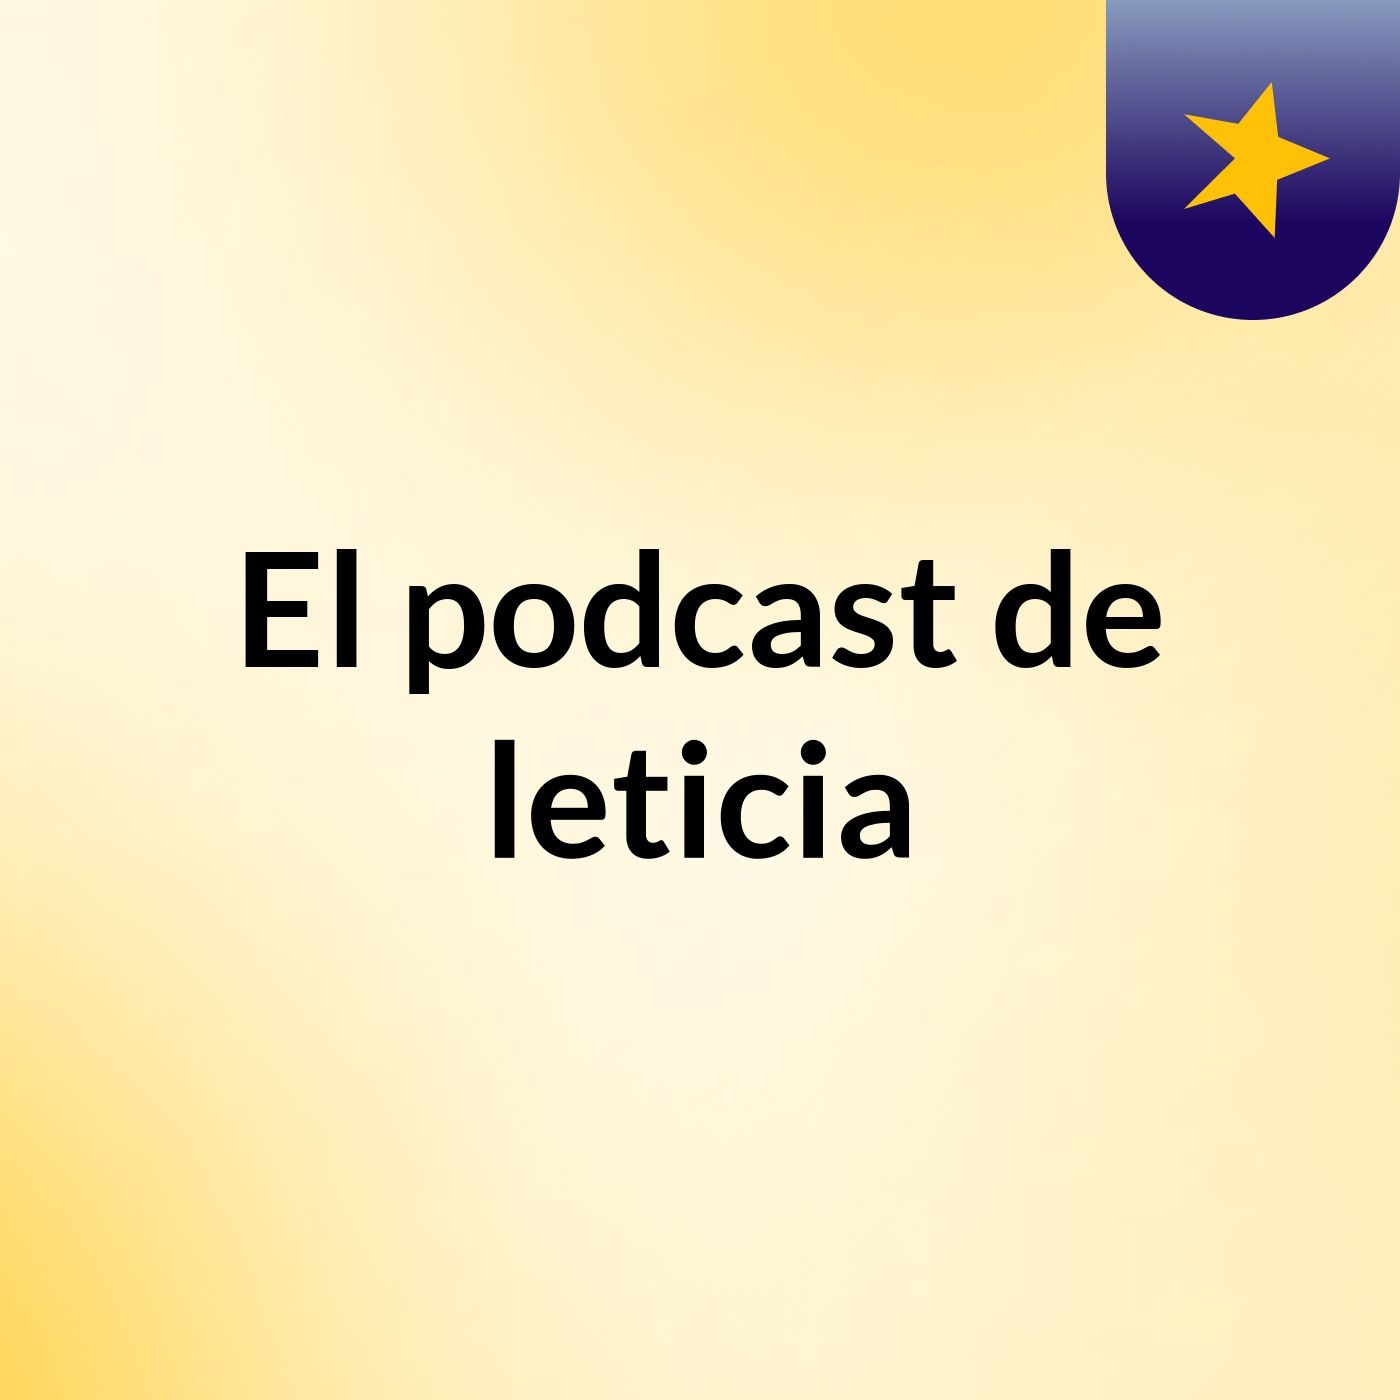 El podcast de leticia